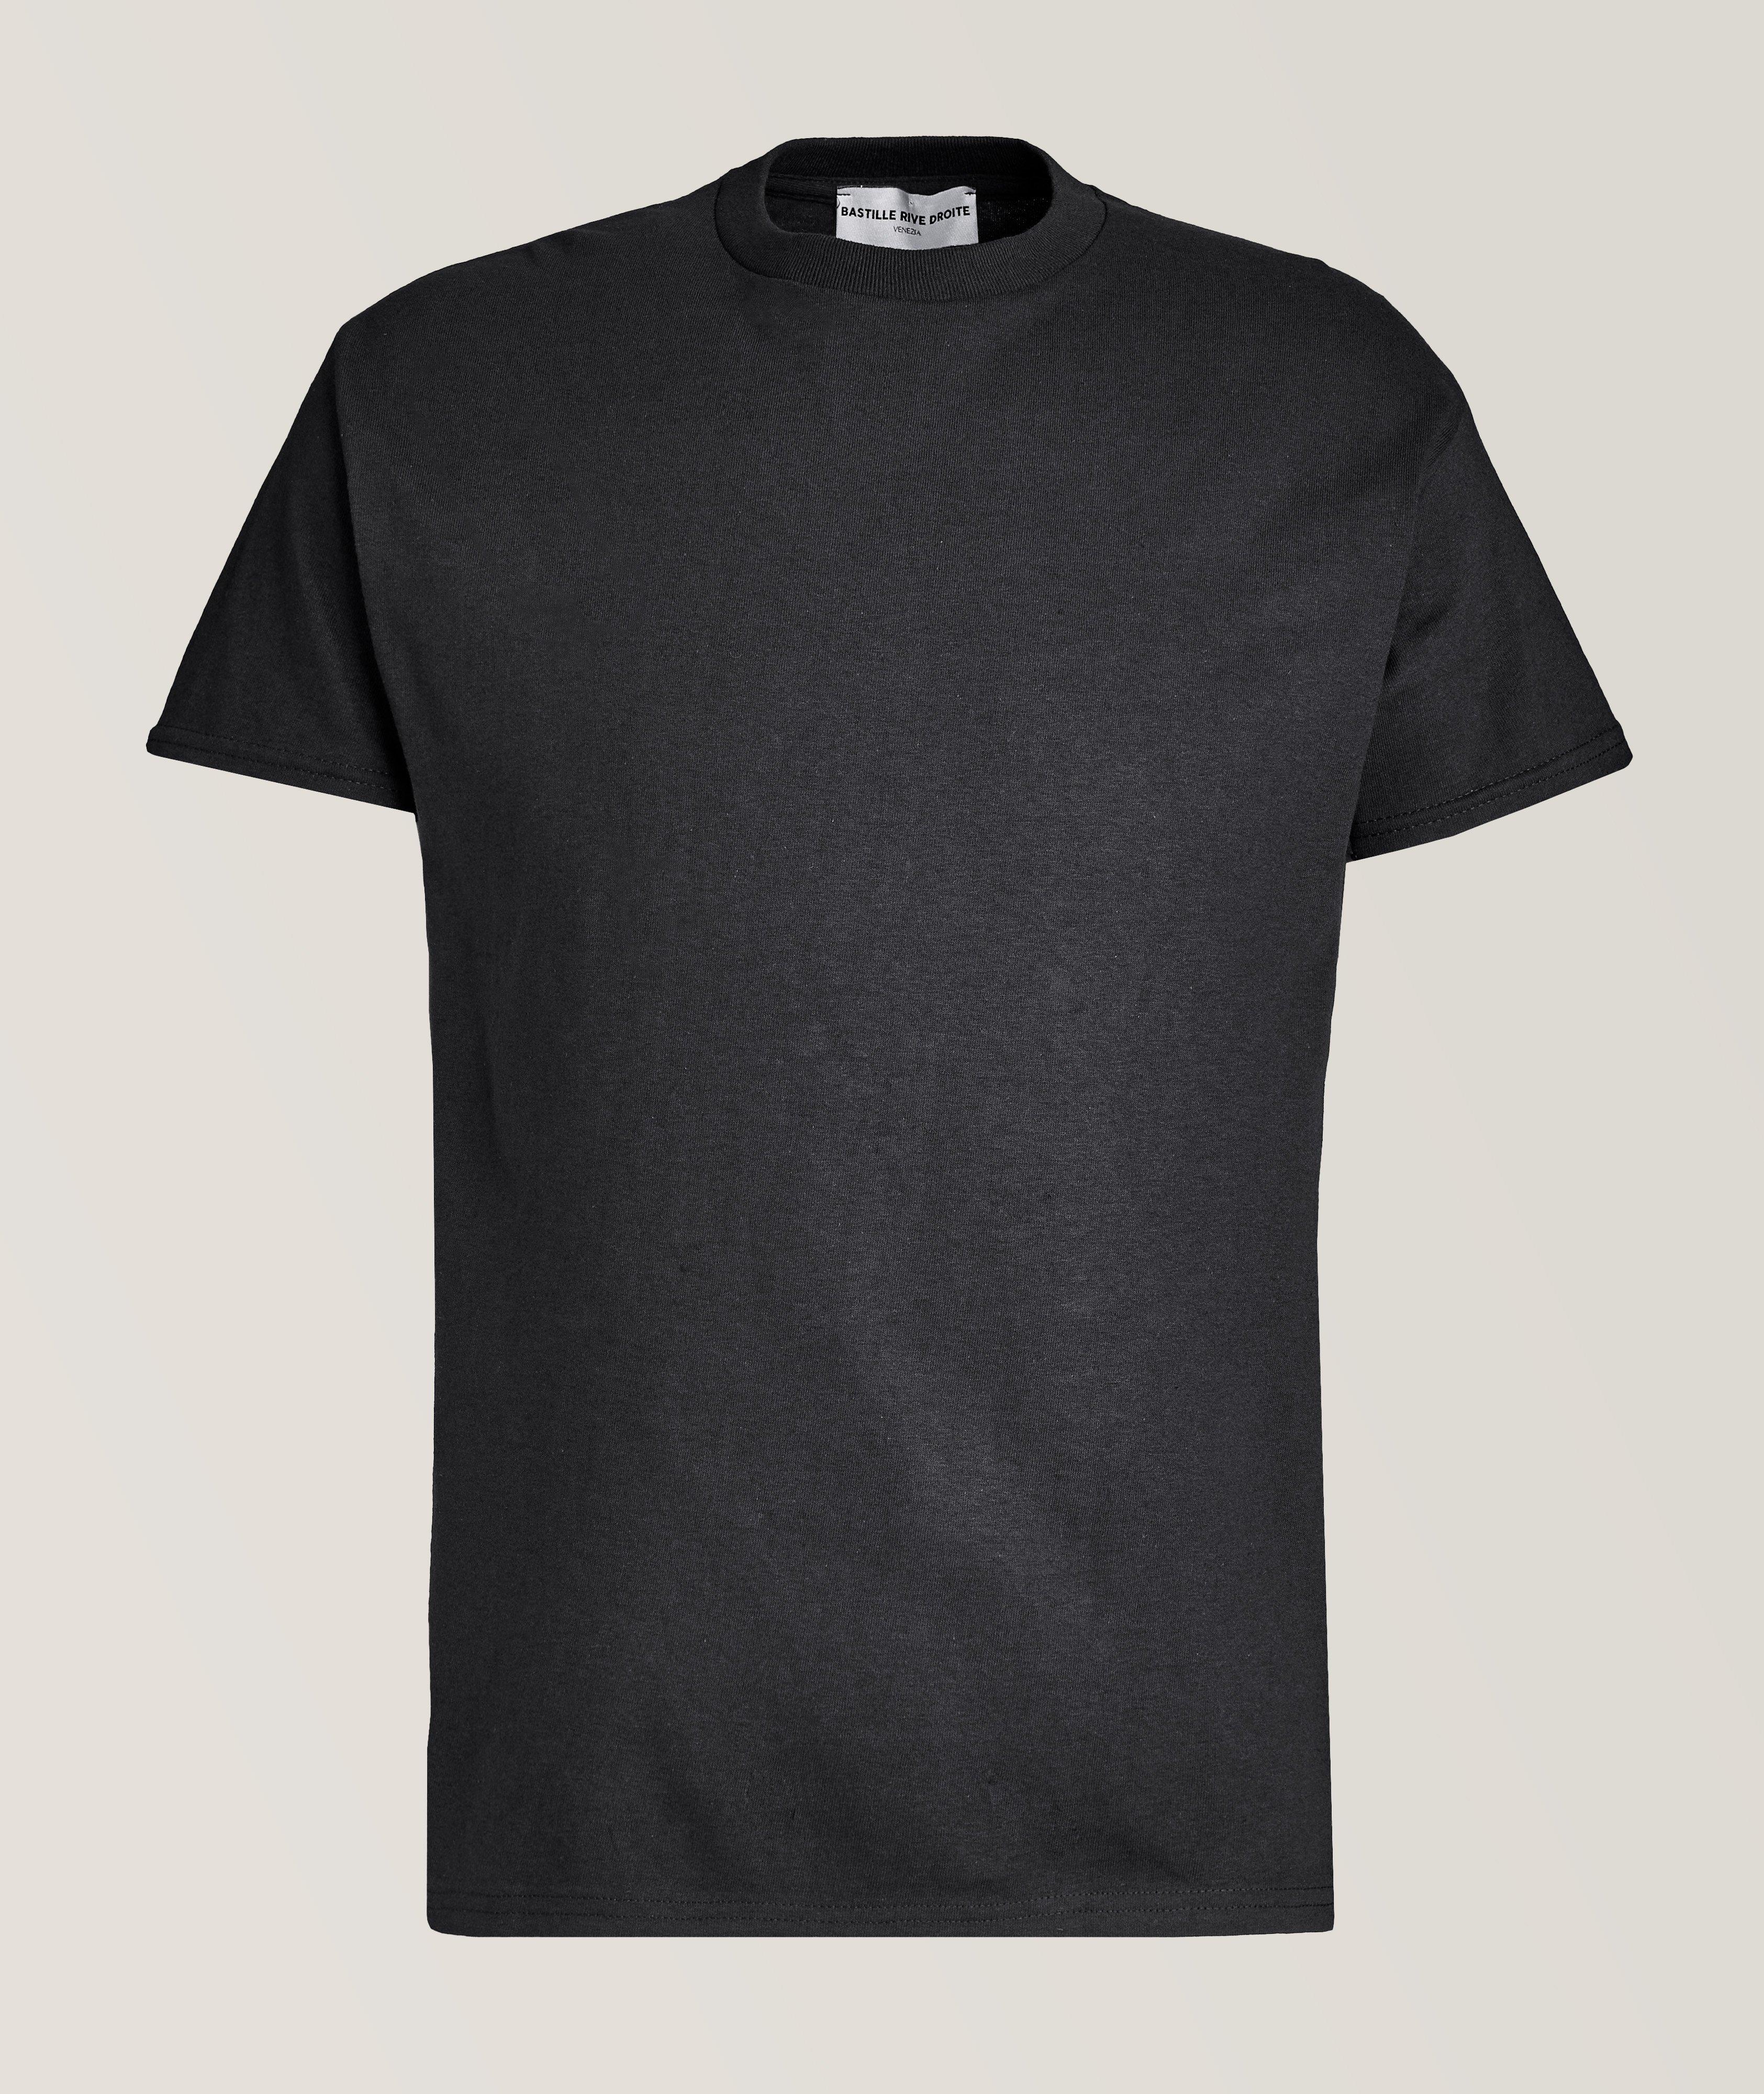 Sirenette T-Shirt  image 1